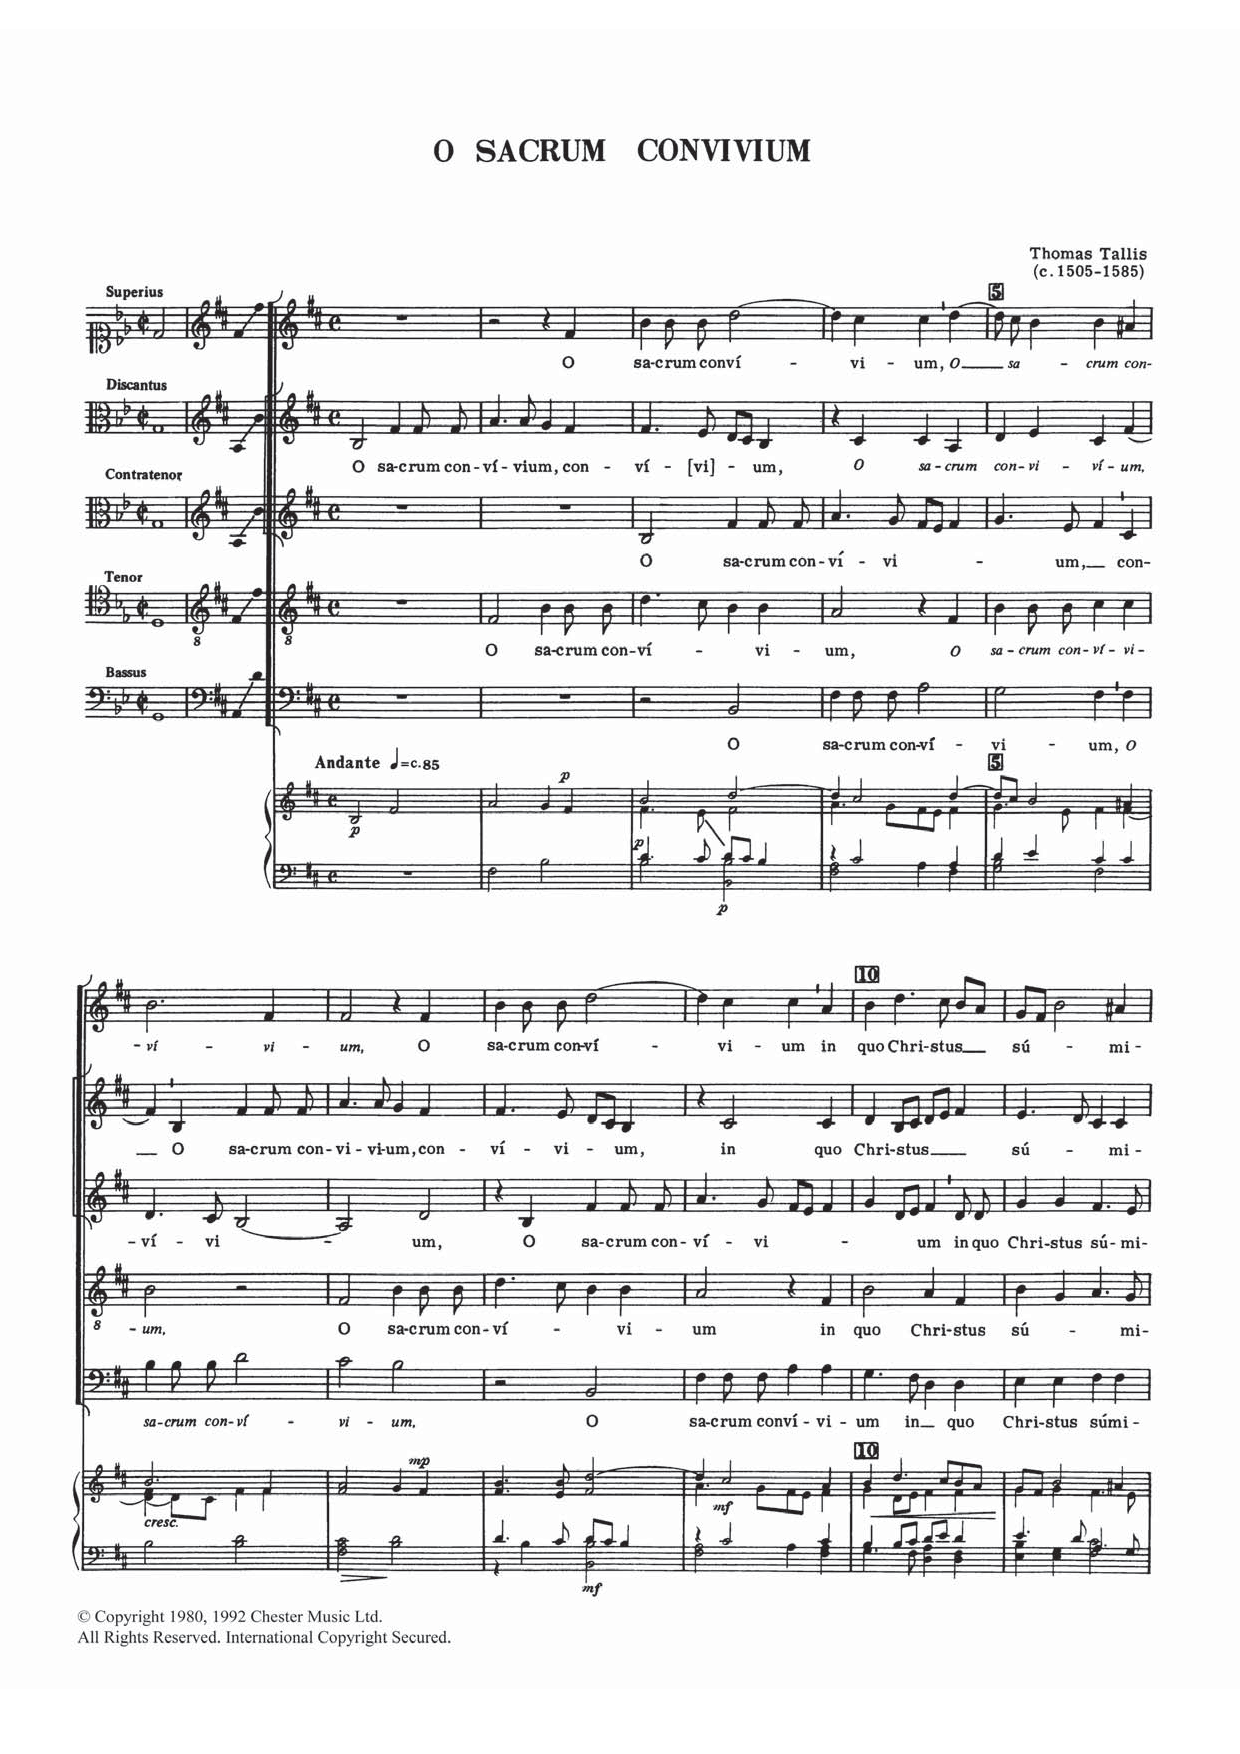 Thomas Tallis O Sacrum Convivium Sheet Music Notes & Chords for Choral SAATB - Download or Print PDF